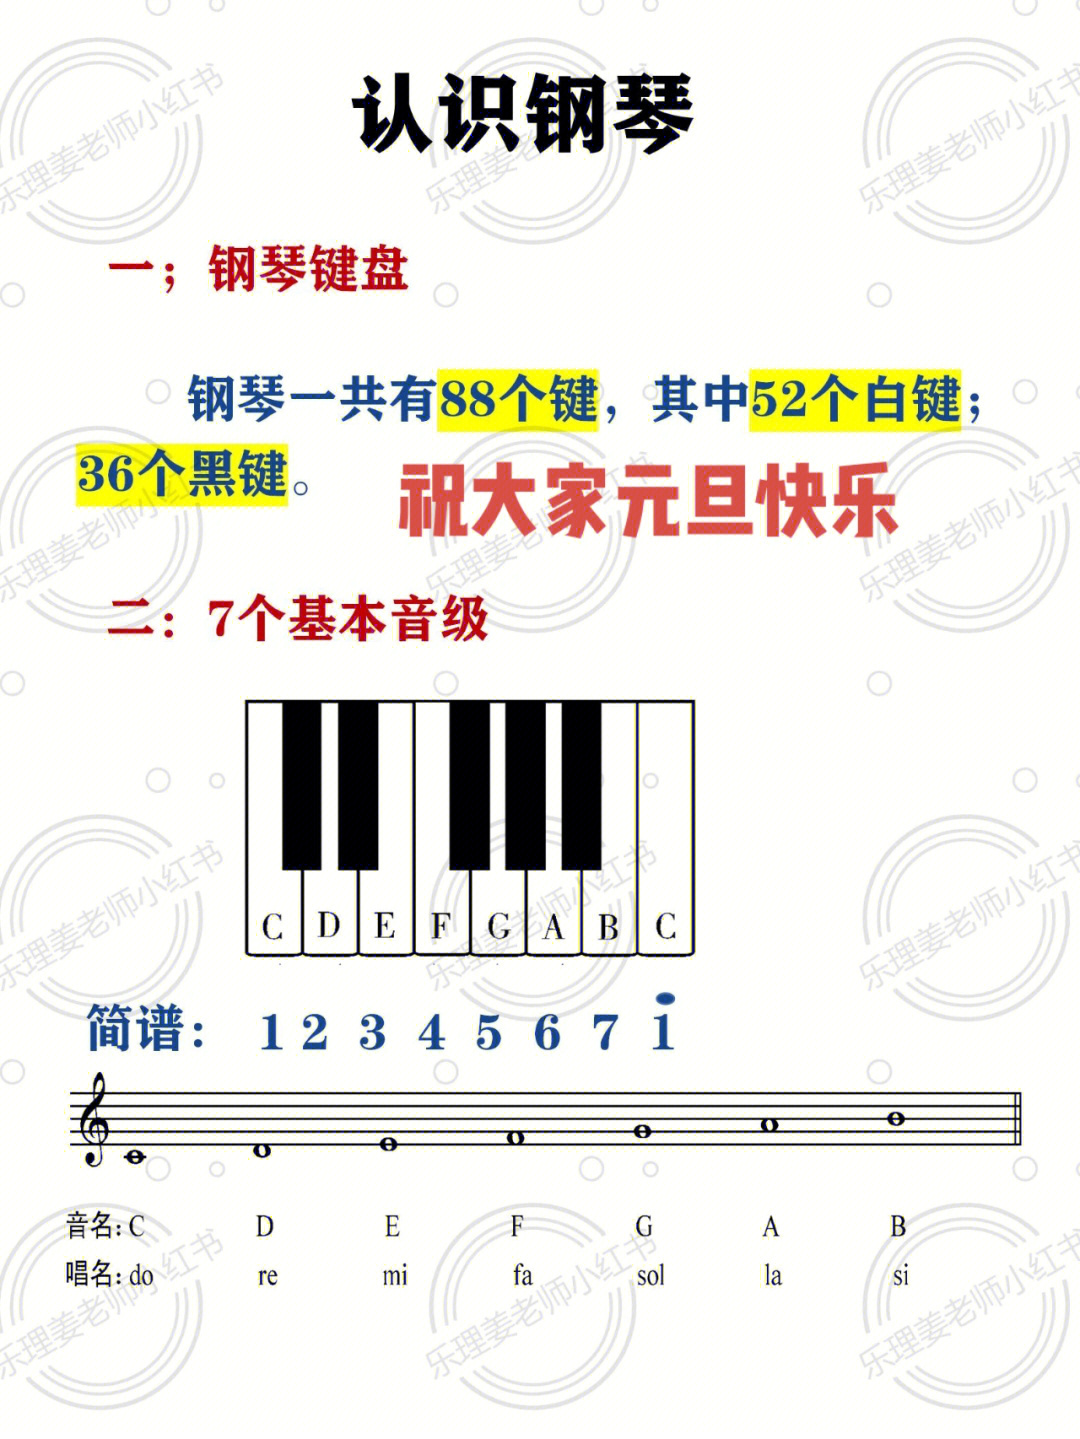 钢琴键盘示意图认识图片